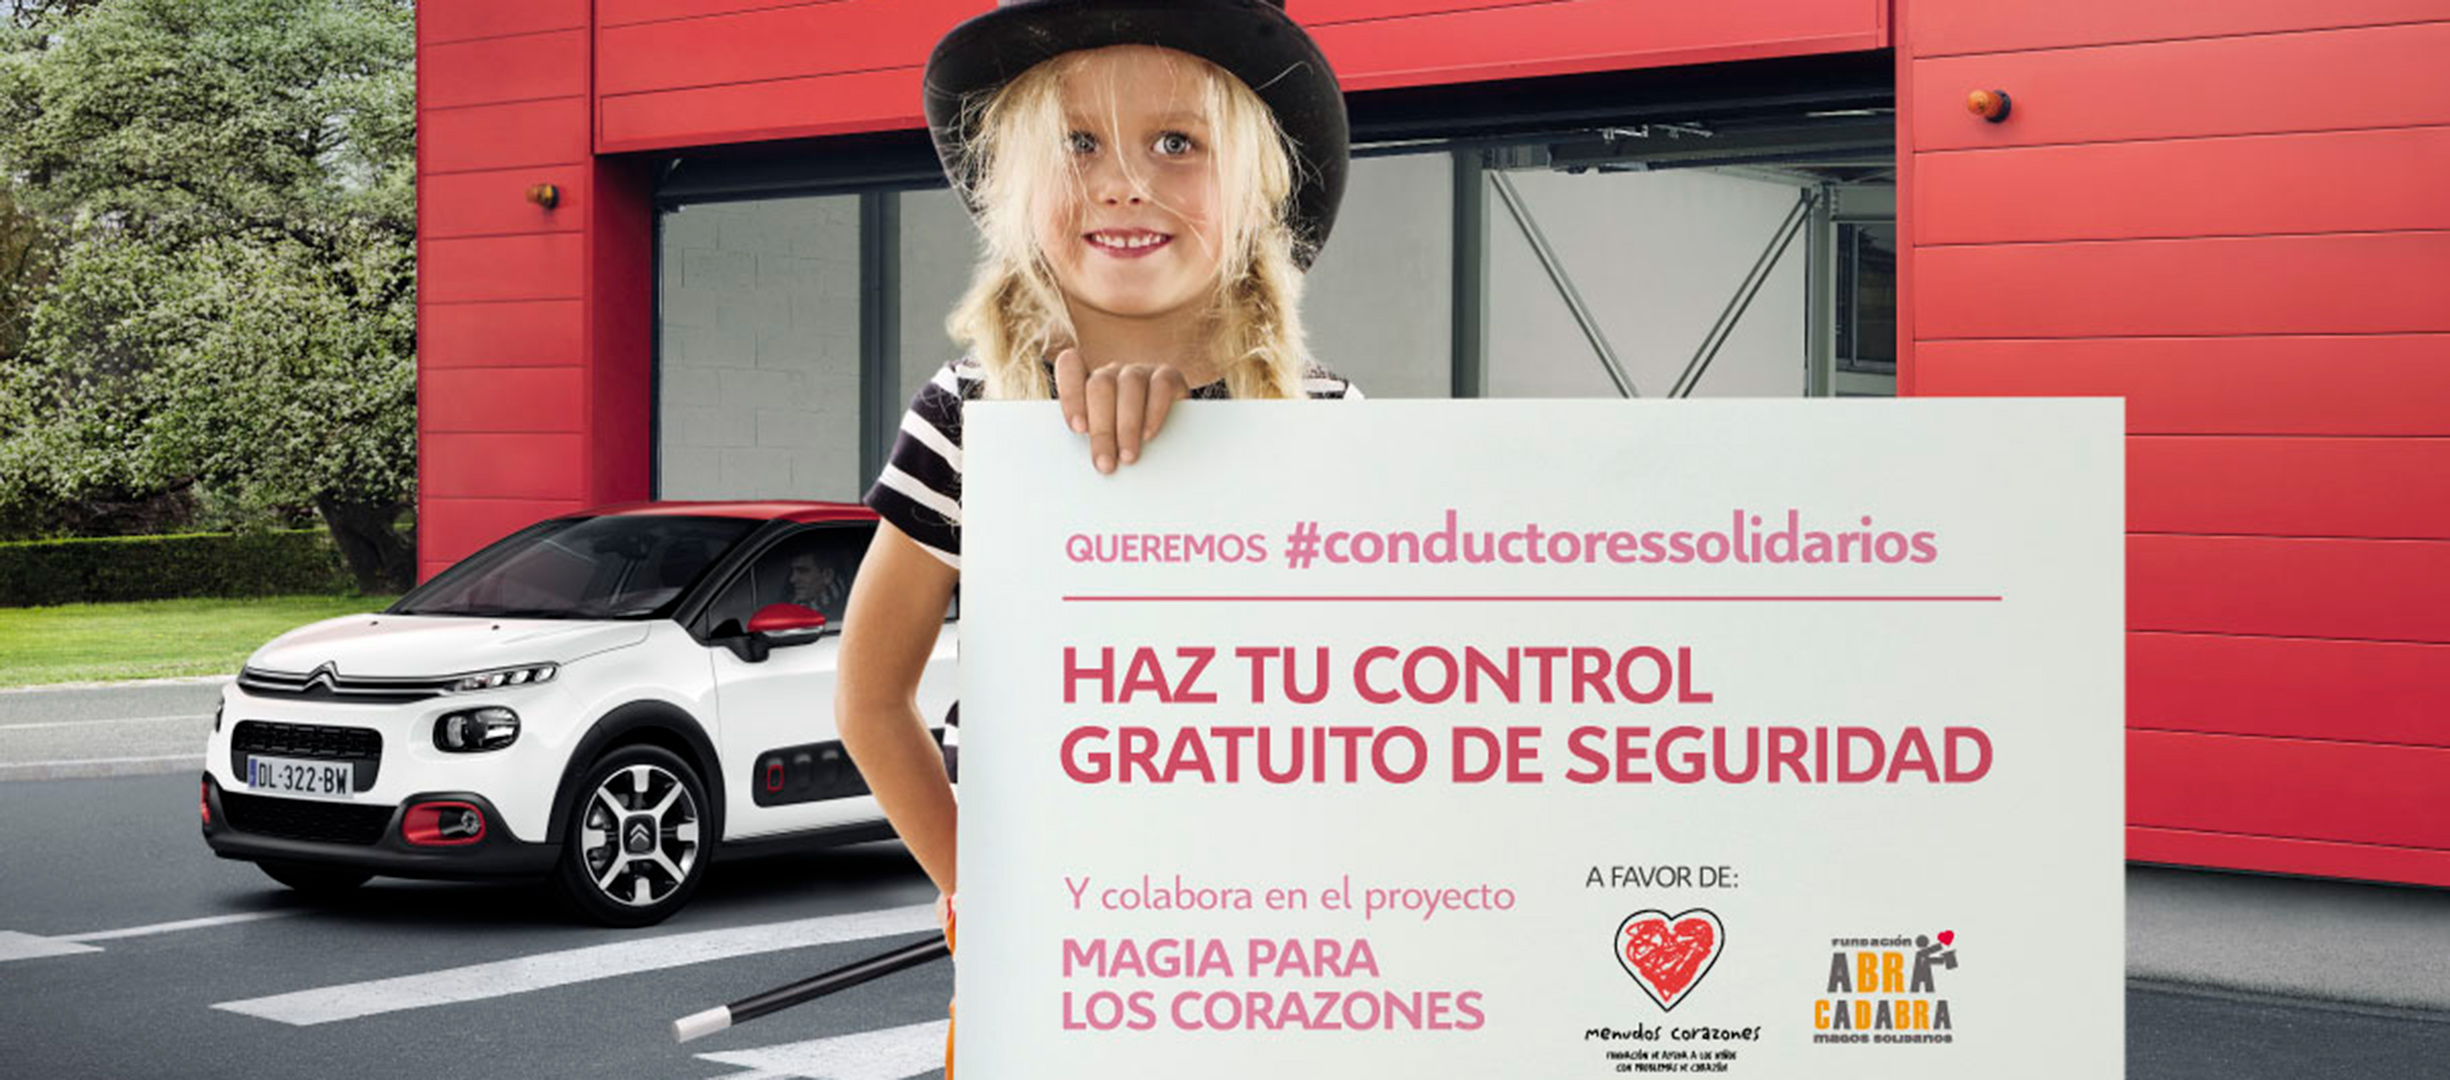 Citroën busca #conductoressolidarios